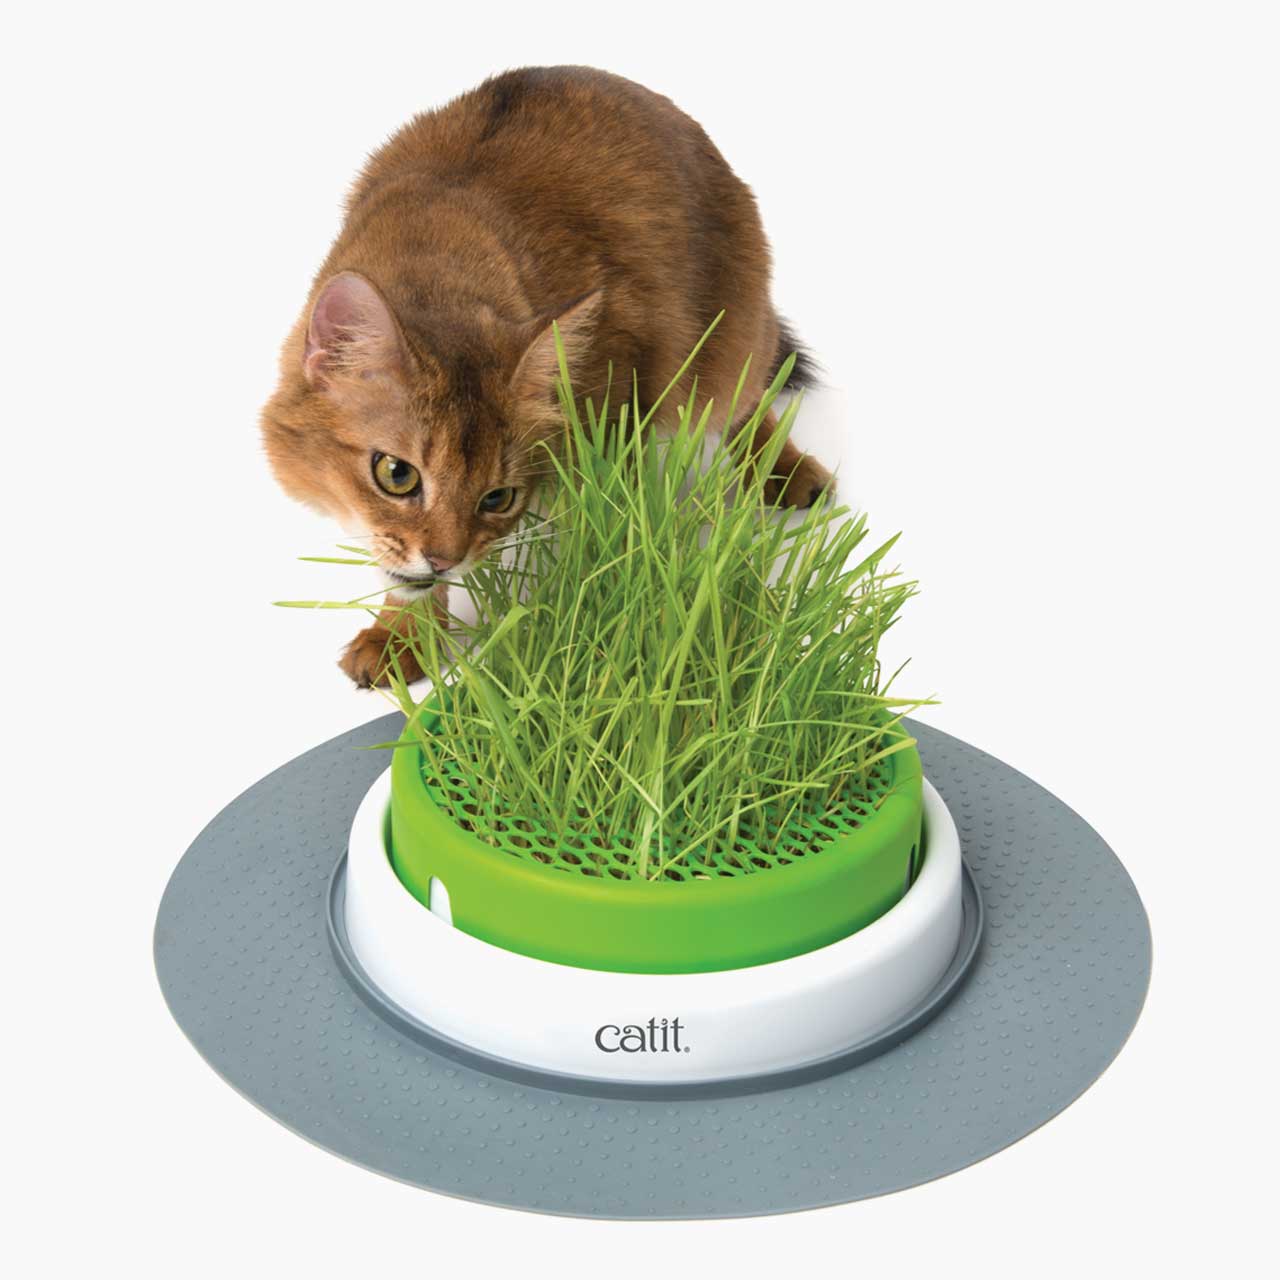 Kot żujący trawę z pojemnika do uprawy trawy